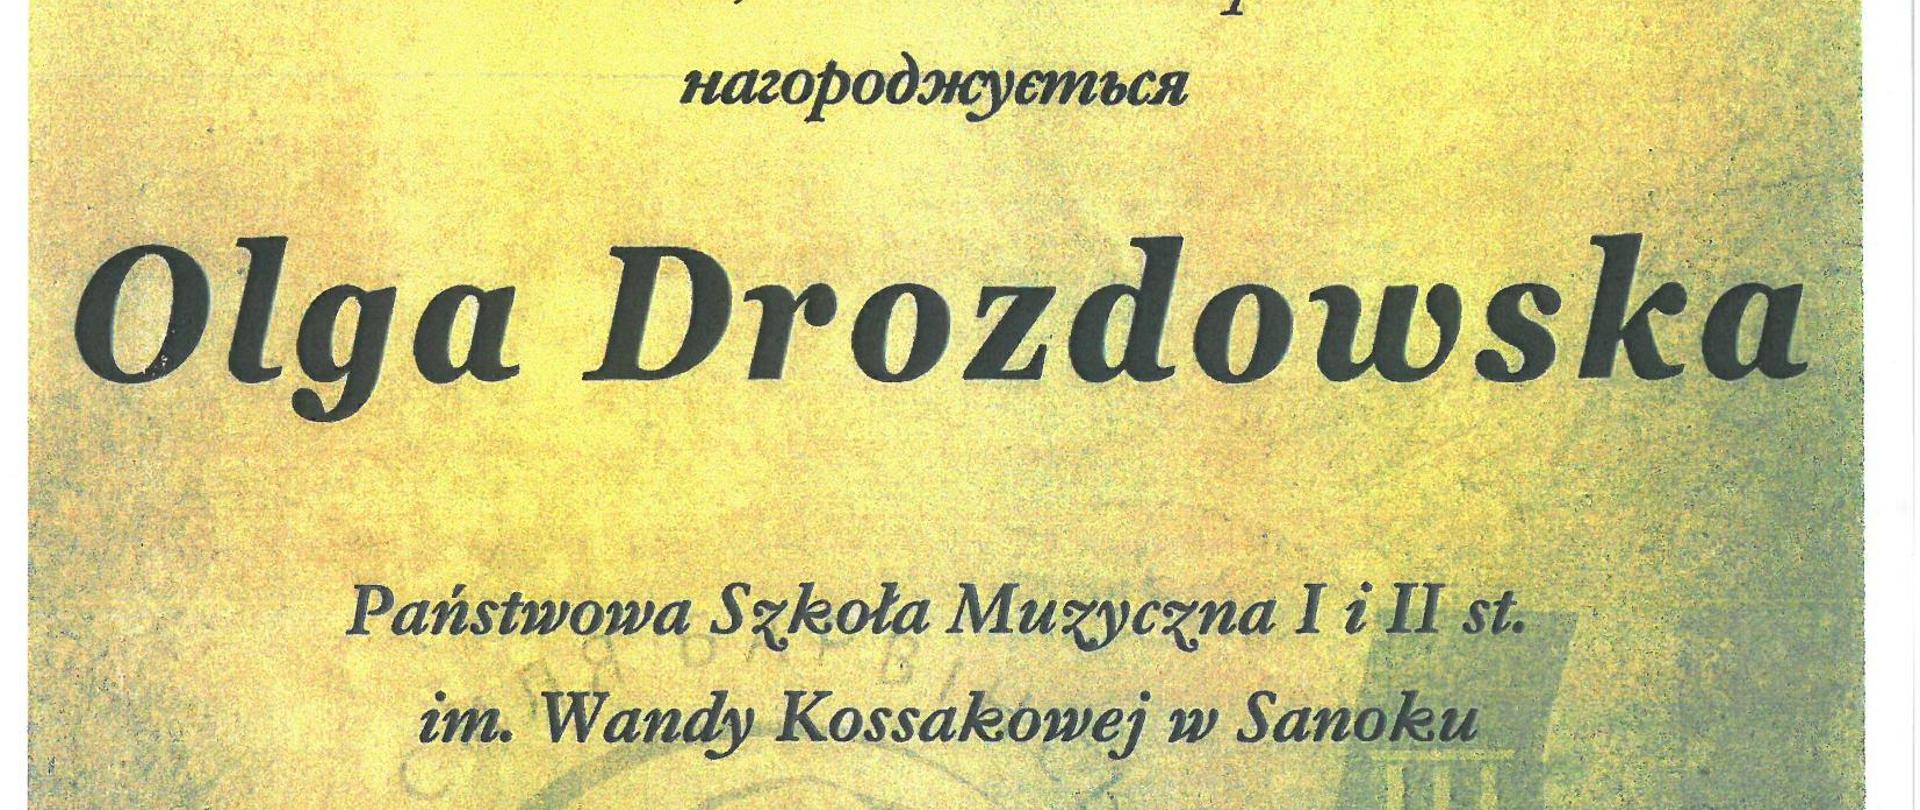 Dyplom - Olga Drozdowska - Tarnopol 19-21.04.2024r. Żółte tło, czarne litery, w górnym rogu logo konkursu 